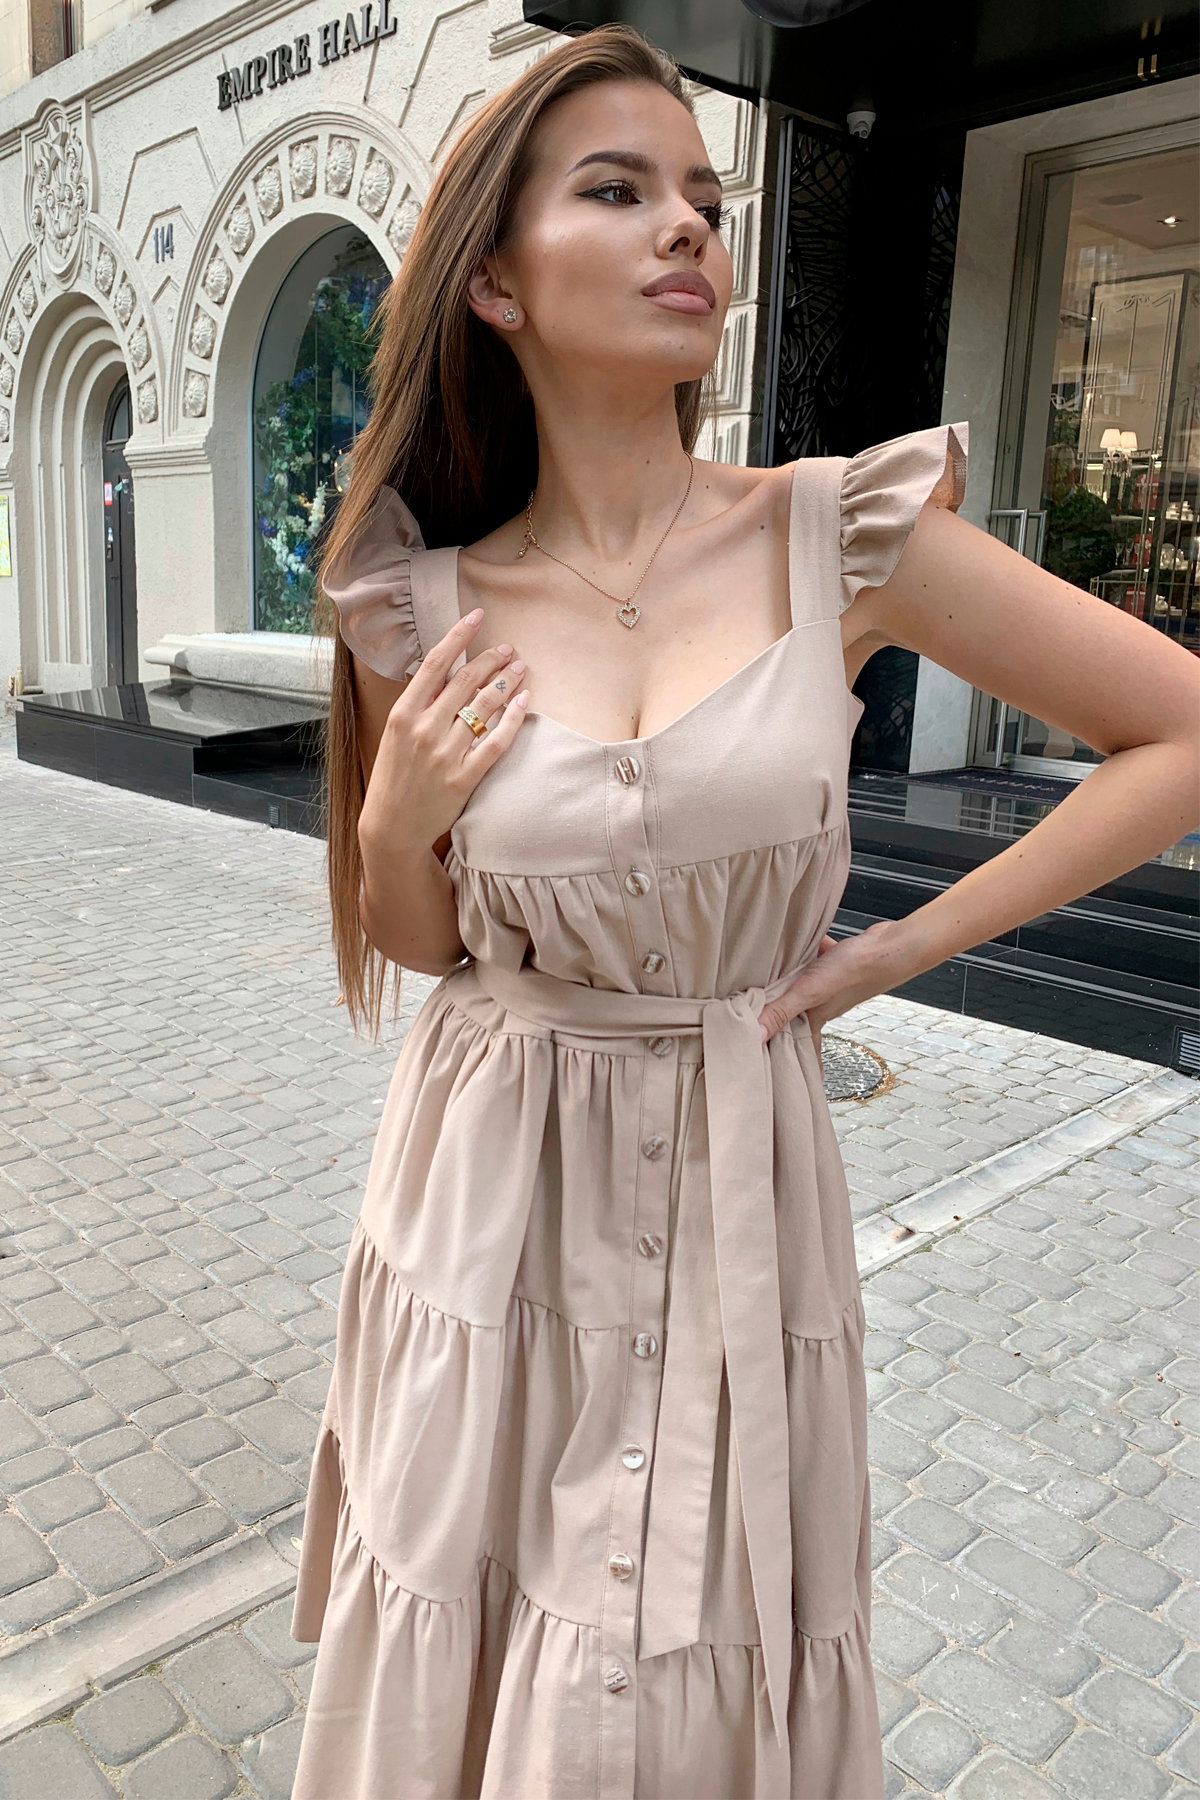 Платье Соло миди 9465 АРТ. 45814 Цвет: Бежевый - фото 4, интернет магазин tm-modus.ru